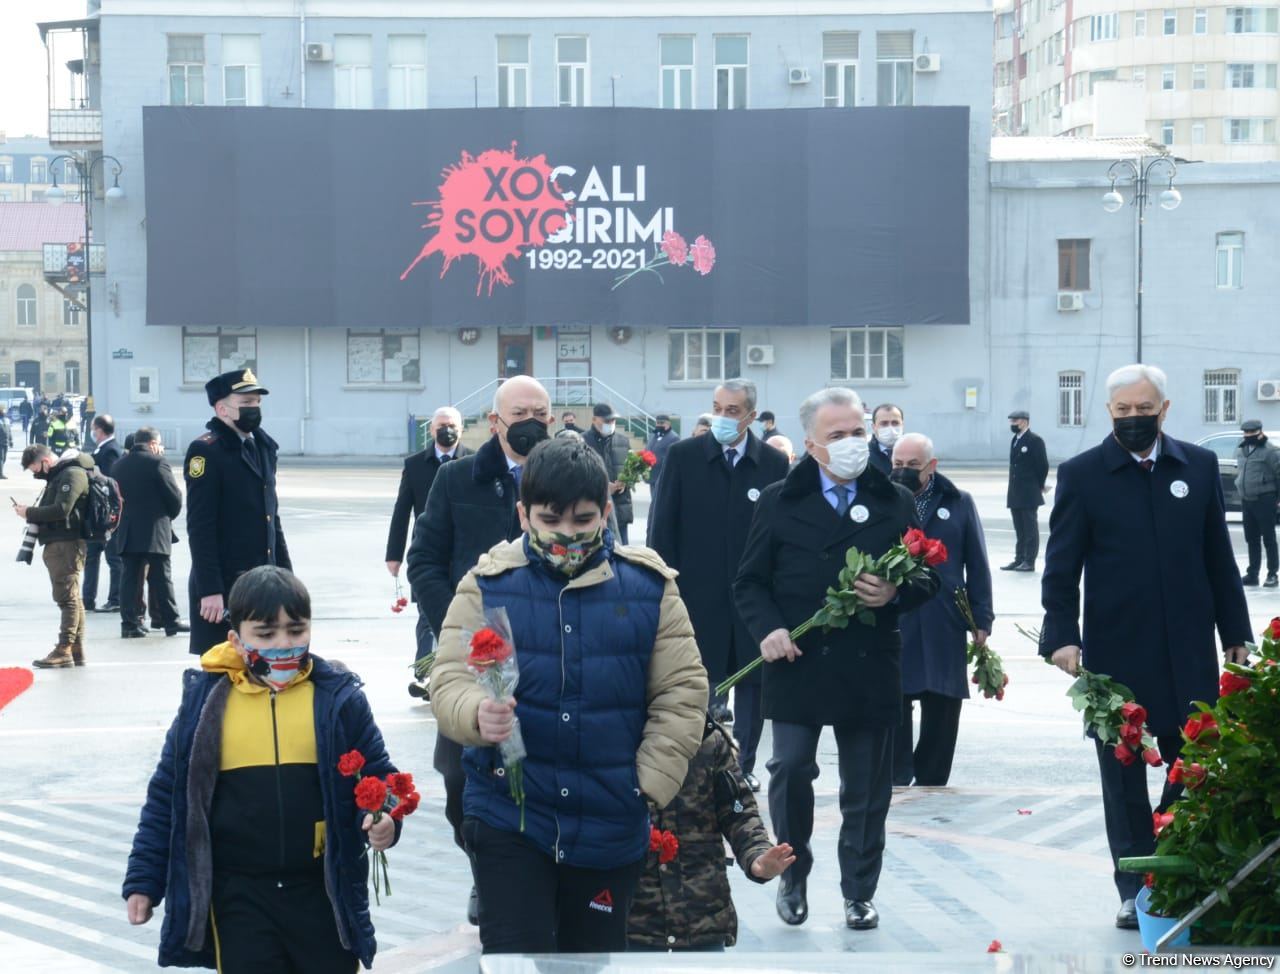 Общественность Азербайджана чтит память жертв Ходжалинского геноцида  (ФОТОРЕПОРТАЖ)